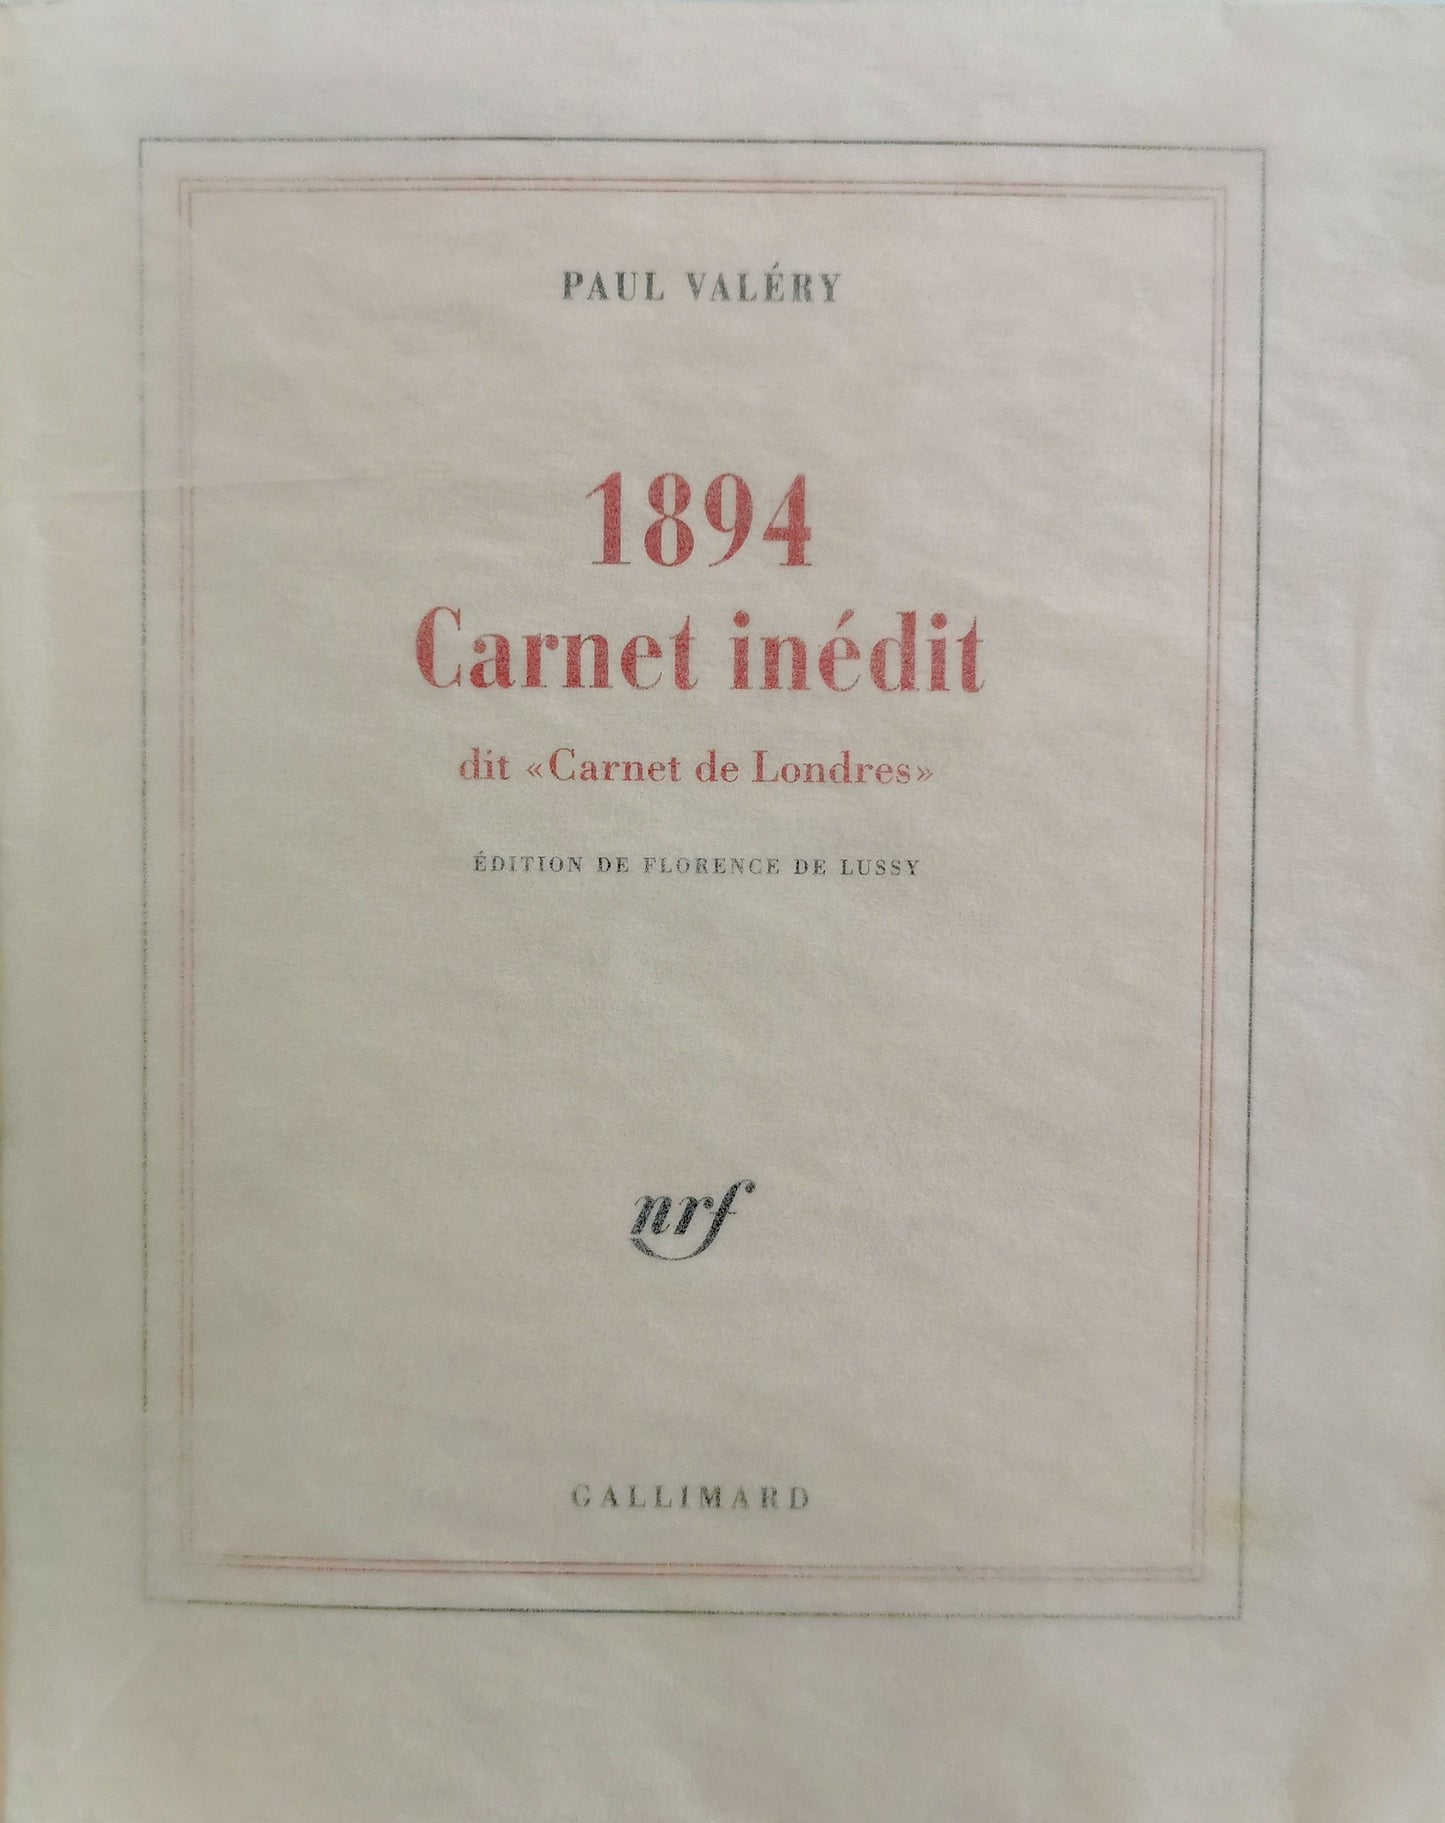 1894 Carnet inédit, dit "Carnet de Londres", Paul Valéry, édition de Florence de Lussy, NRF, Gallimard/Bibliothèque nationale de France, 2005.